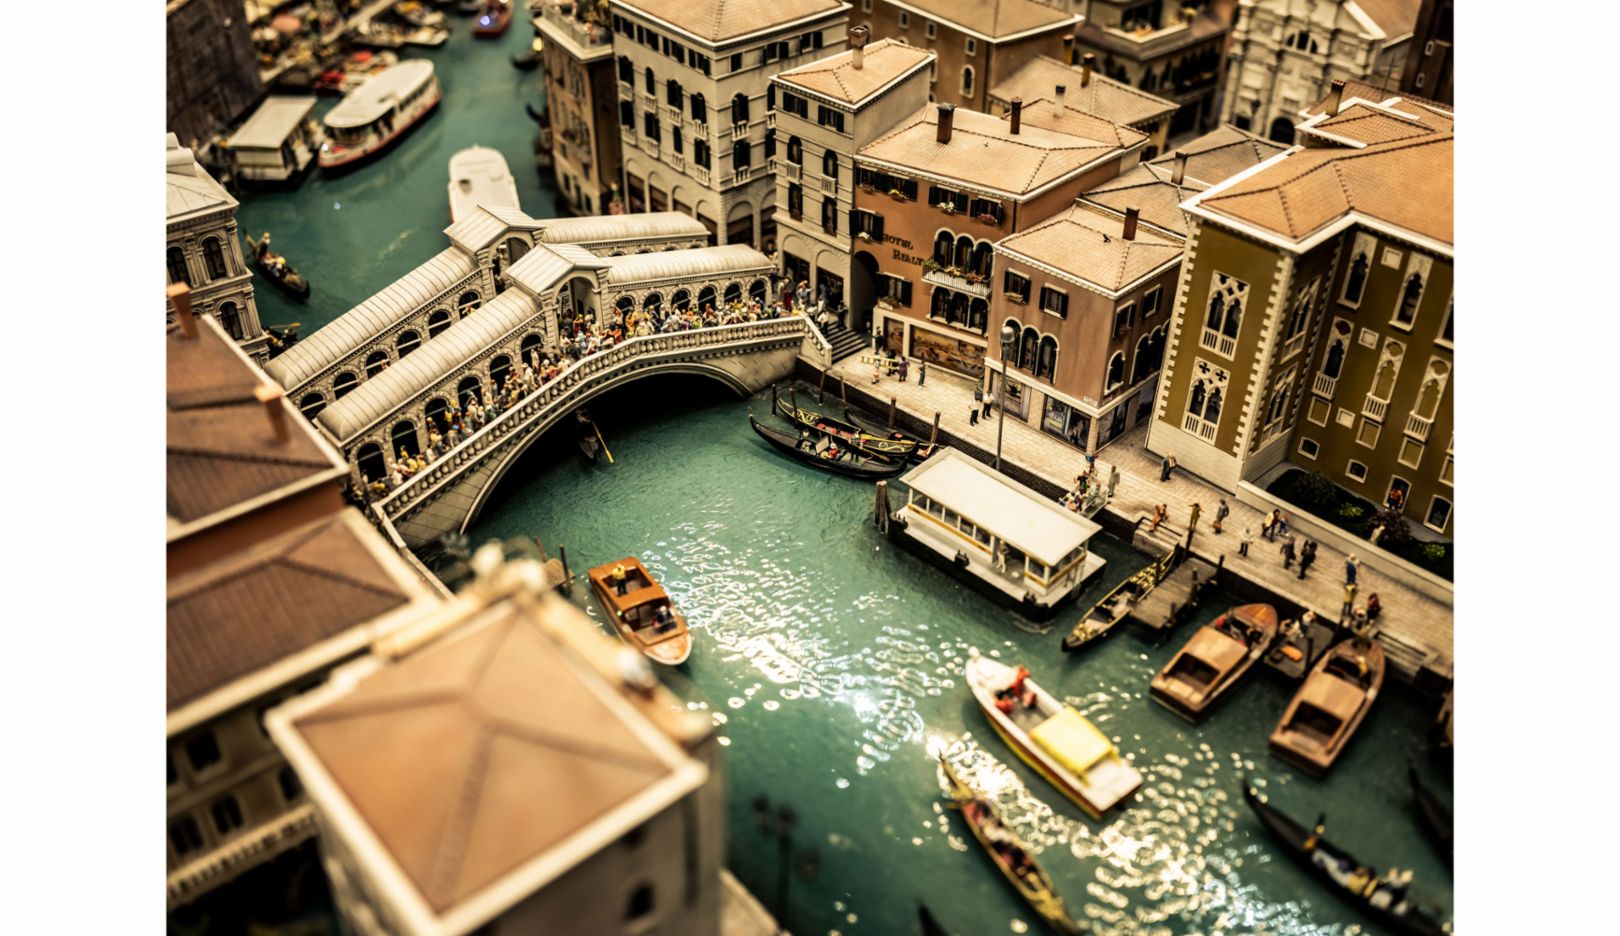 Das Hamburger Miniatur Wunderland führt die Besucher durch viele Welten. Für Mini-Venedig haben die Erbauer insgesamt 150 Gondeln und 26 Brücken gestaltet – darunter auch die weltbekannte Rialtobrücke.